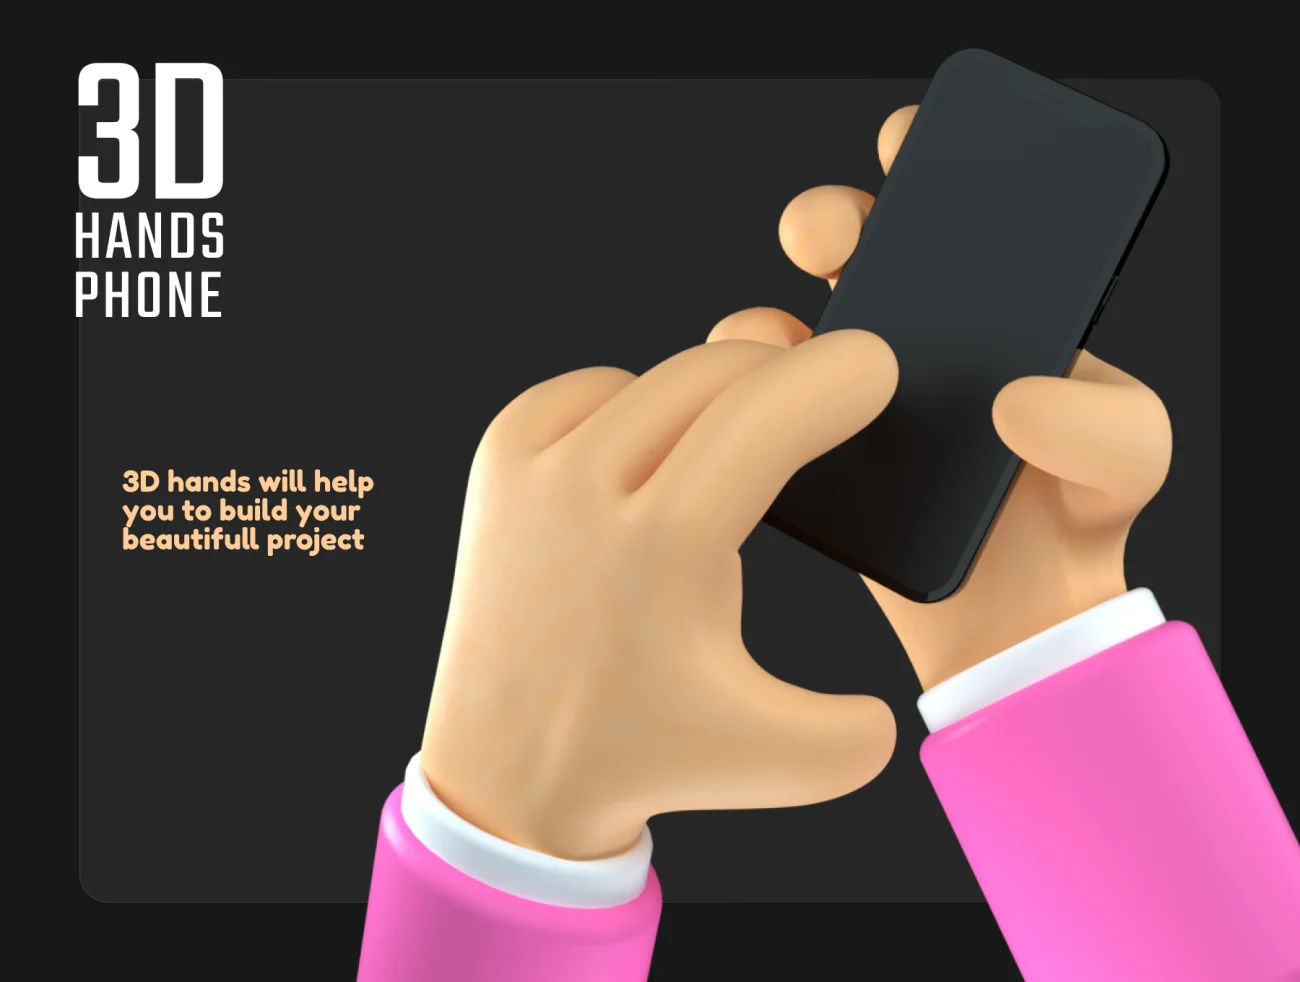 10款3D人物手持手机插图 3D hands phone-3D/图标、人物插画、插画、社交购物-到位啦UI